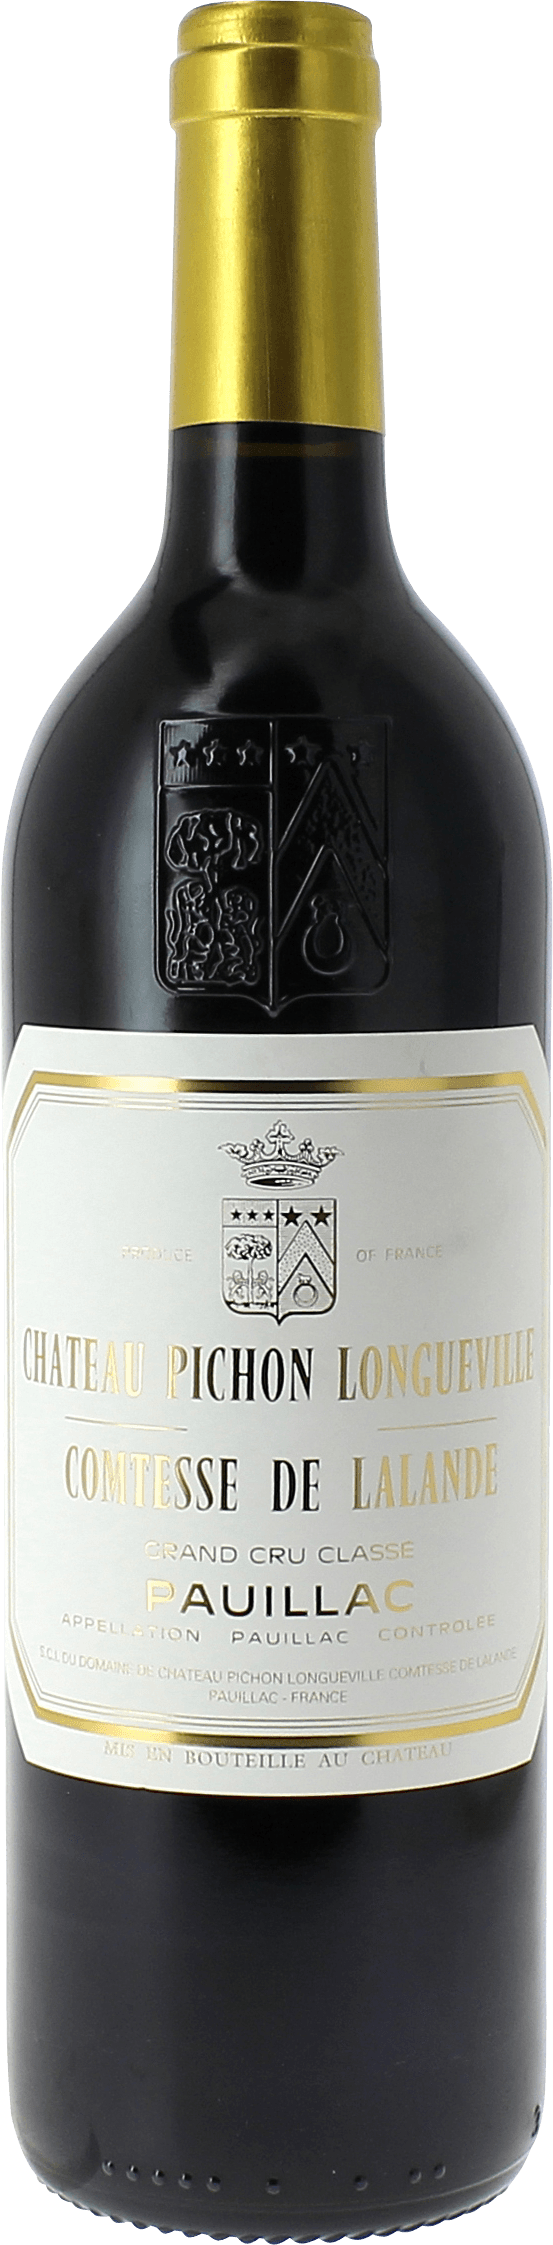 Pichon comtesse de lalande 1984 2me Grand cru class Pauillac, Bordeaux rouge